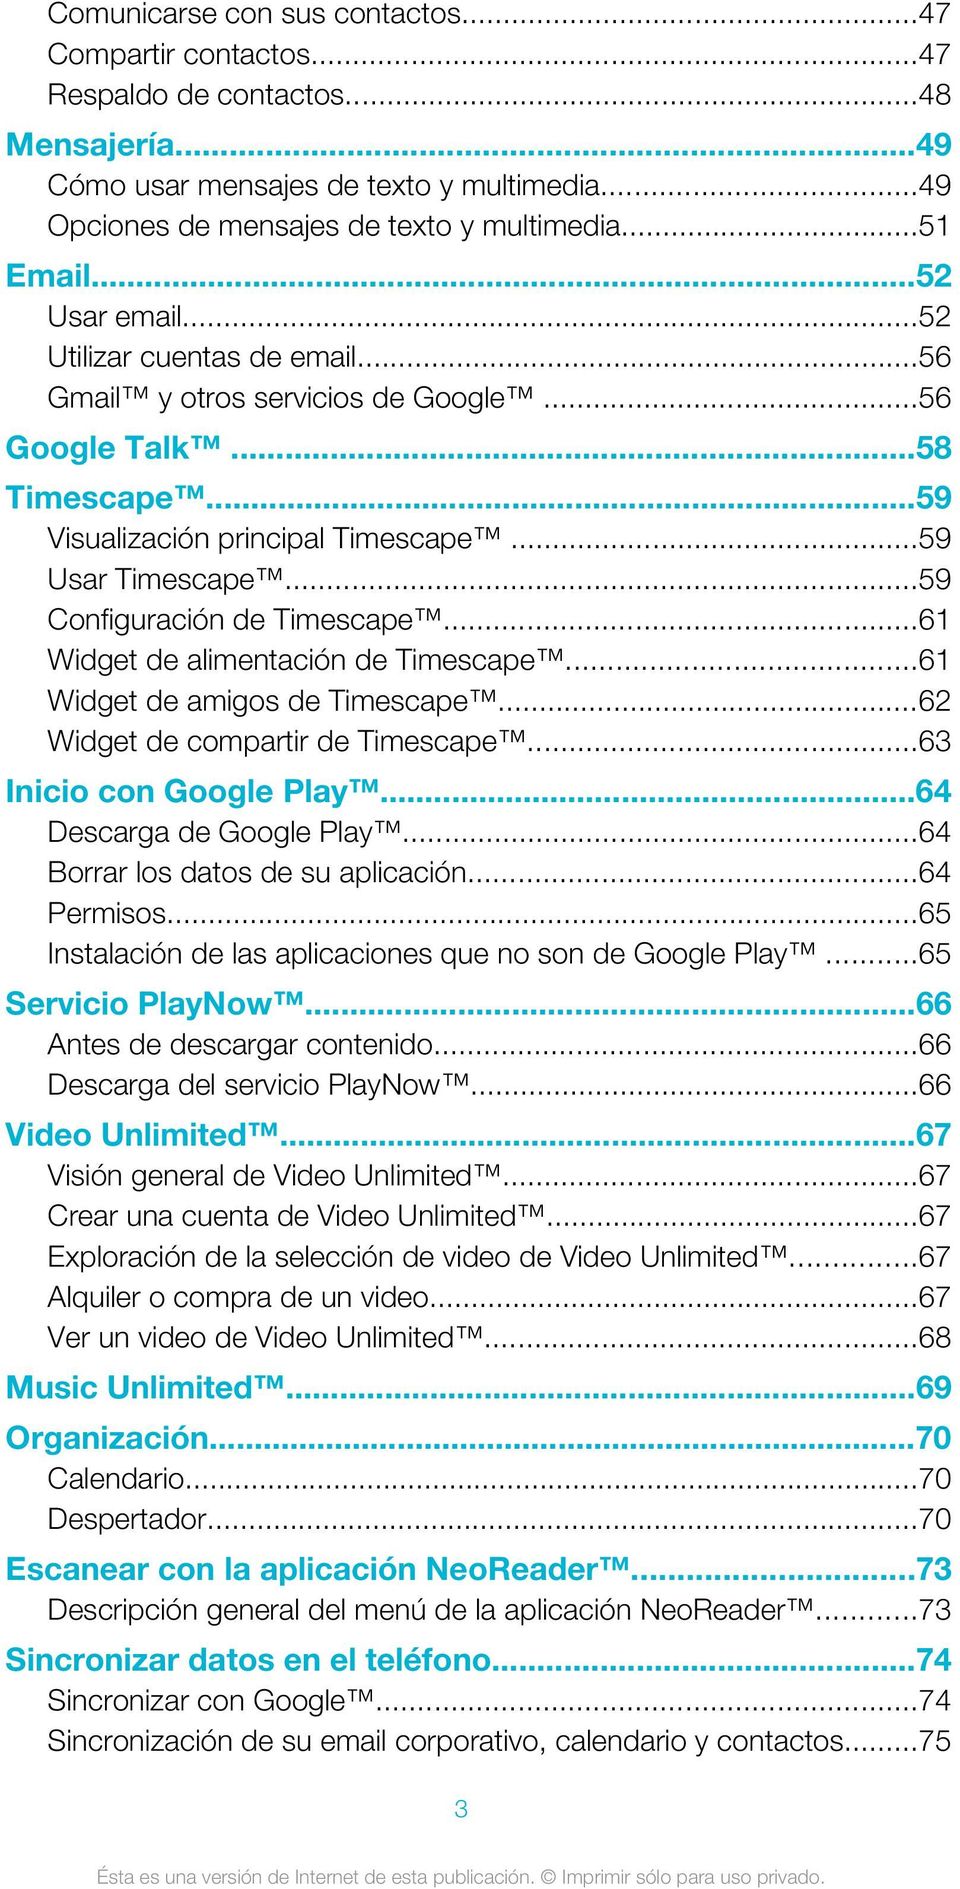 ..59 Configuración de Timescape...61 Widget de alimentación de Timescape...61 Widget de amigos de Timescape...62 Widget de compartir de Timescape...63 Inicio con Google Play.